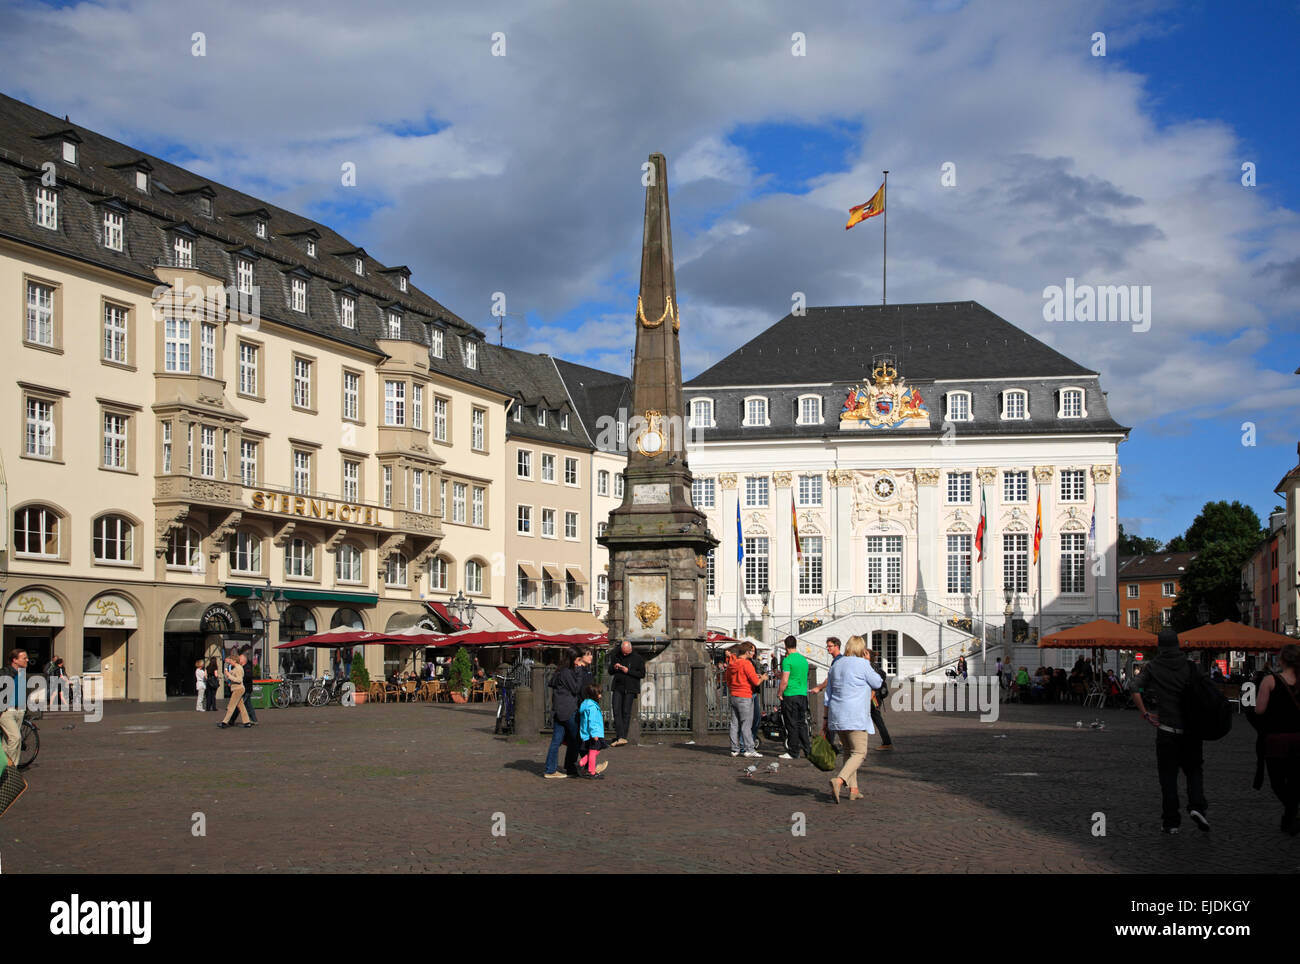 Bonn, place du marché et ancien hôtel de ville, Rhénanie du Nord-Westphalie, Allemagne, Europe Banque D'Images